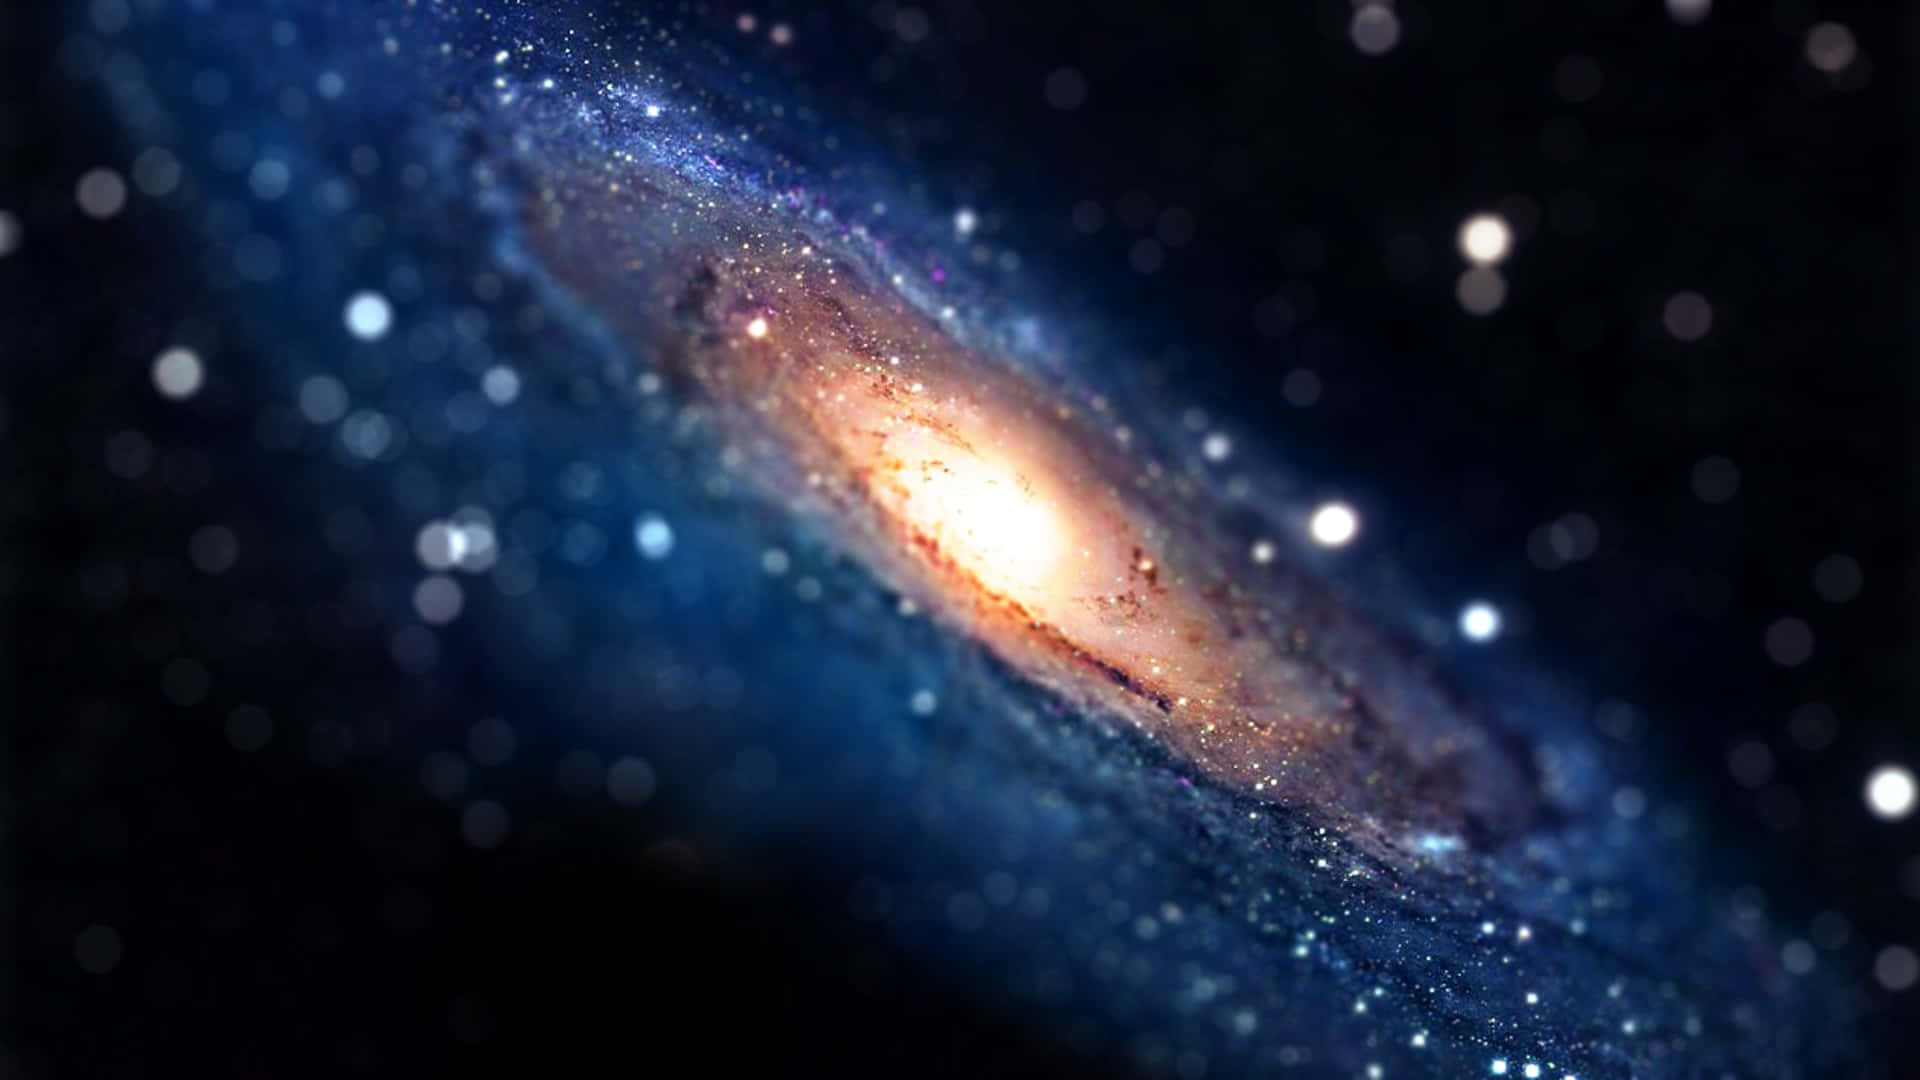 Lamajestuosa Galaxia De Andrómeda Se Eleva En El Cielo Nocturno. Fondo de pantalla